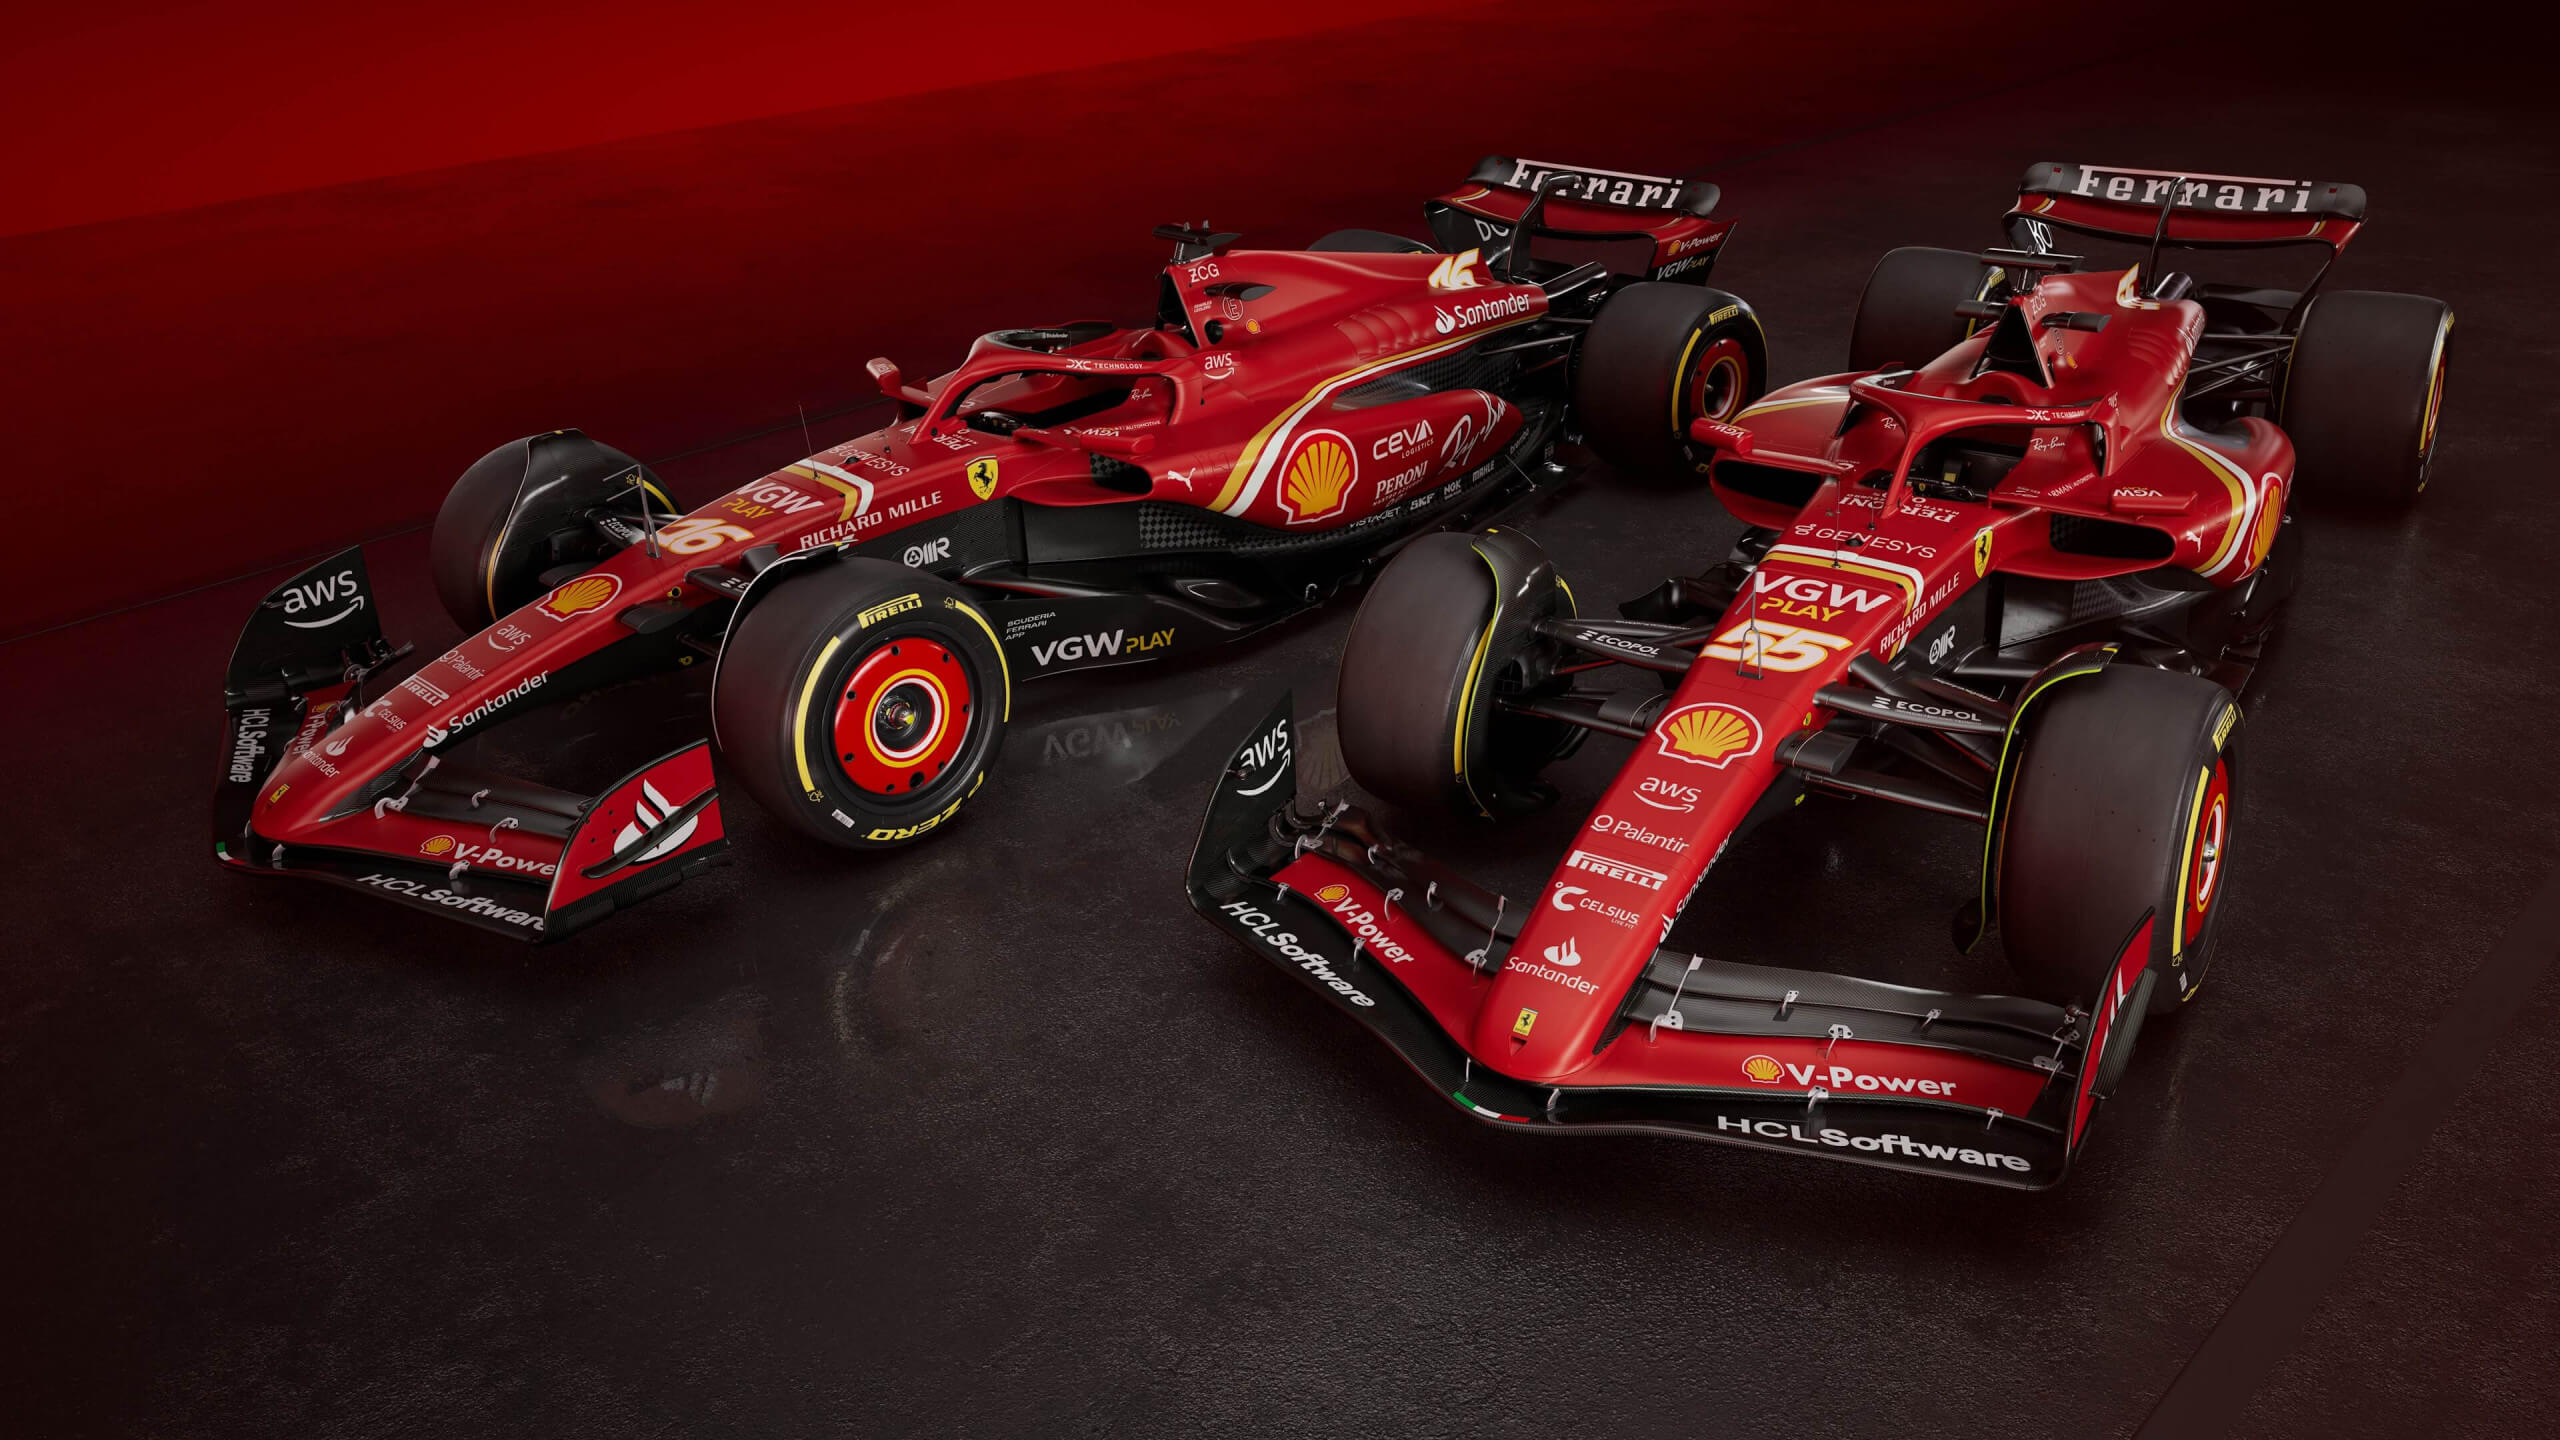 Ferrari F1 cars wallpaper 2560x1440